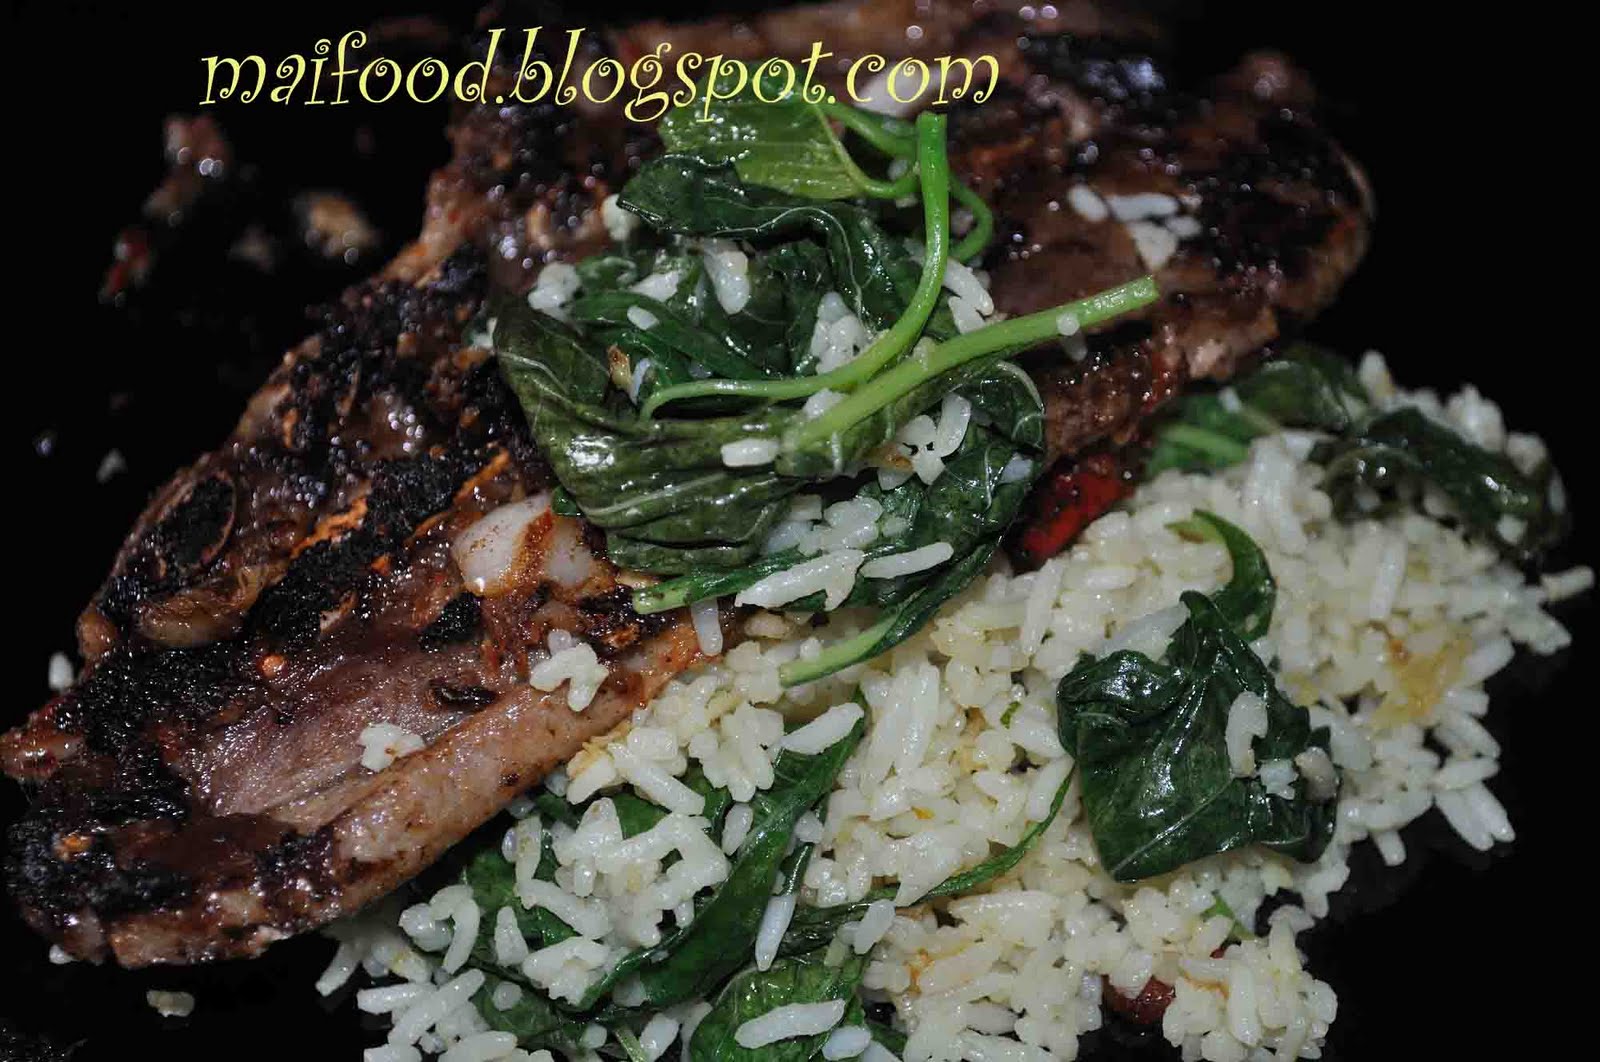 Maifood: lamb chop with nasi goreng mudah